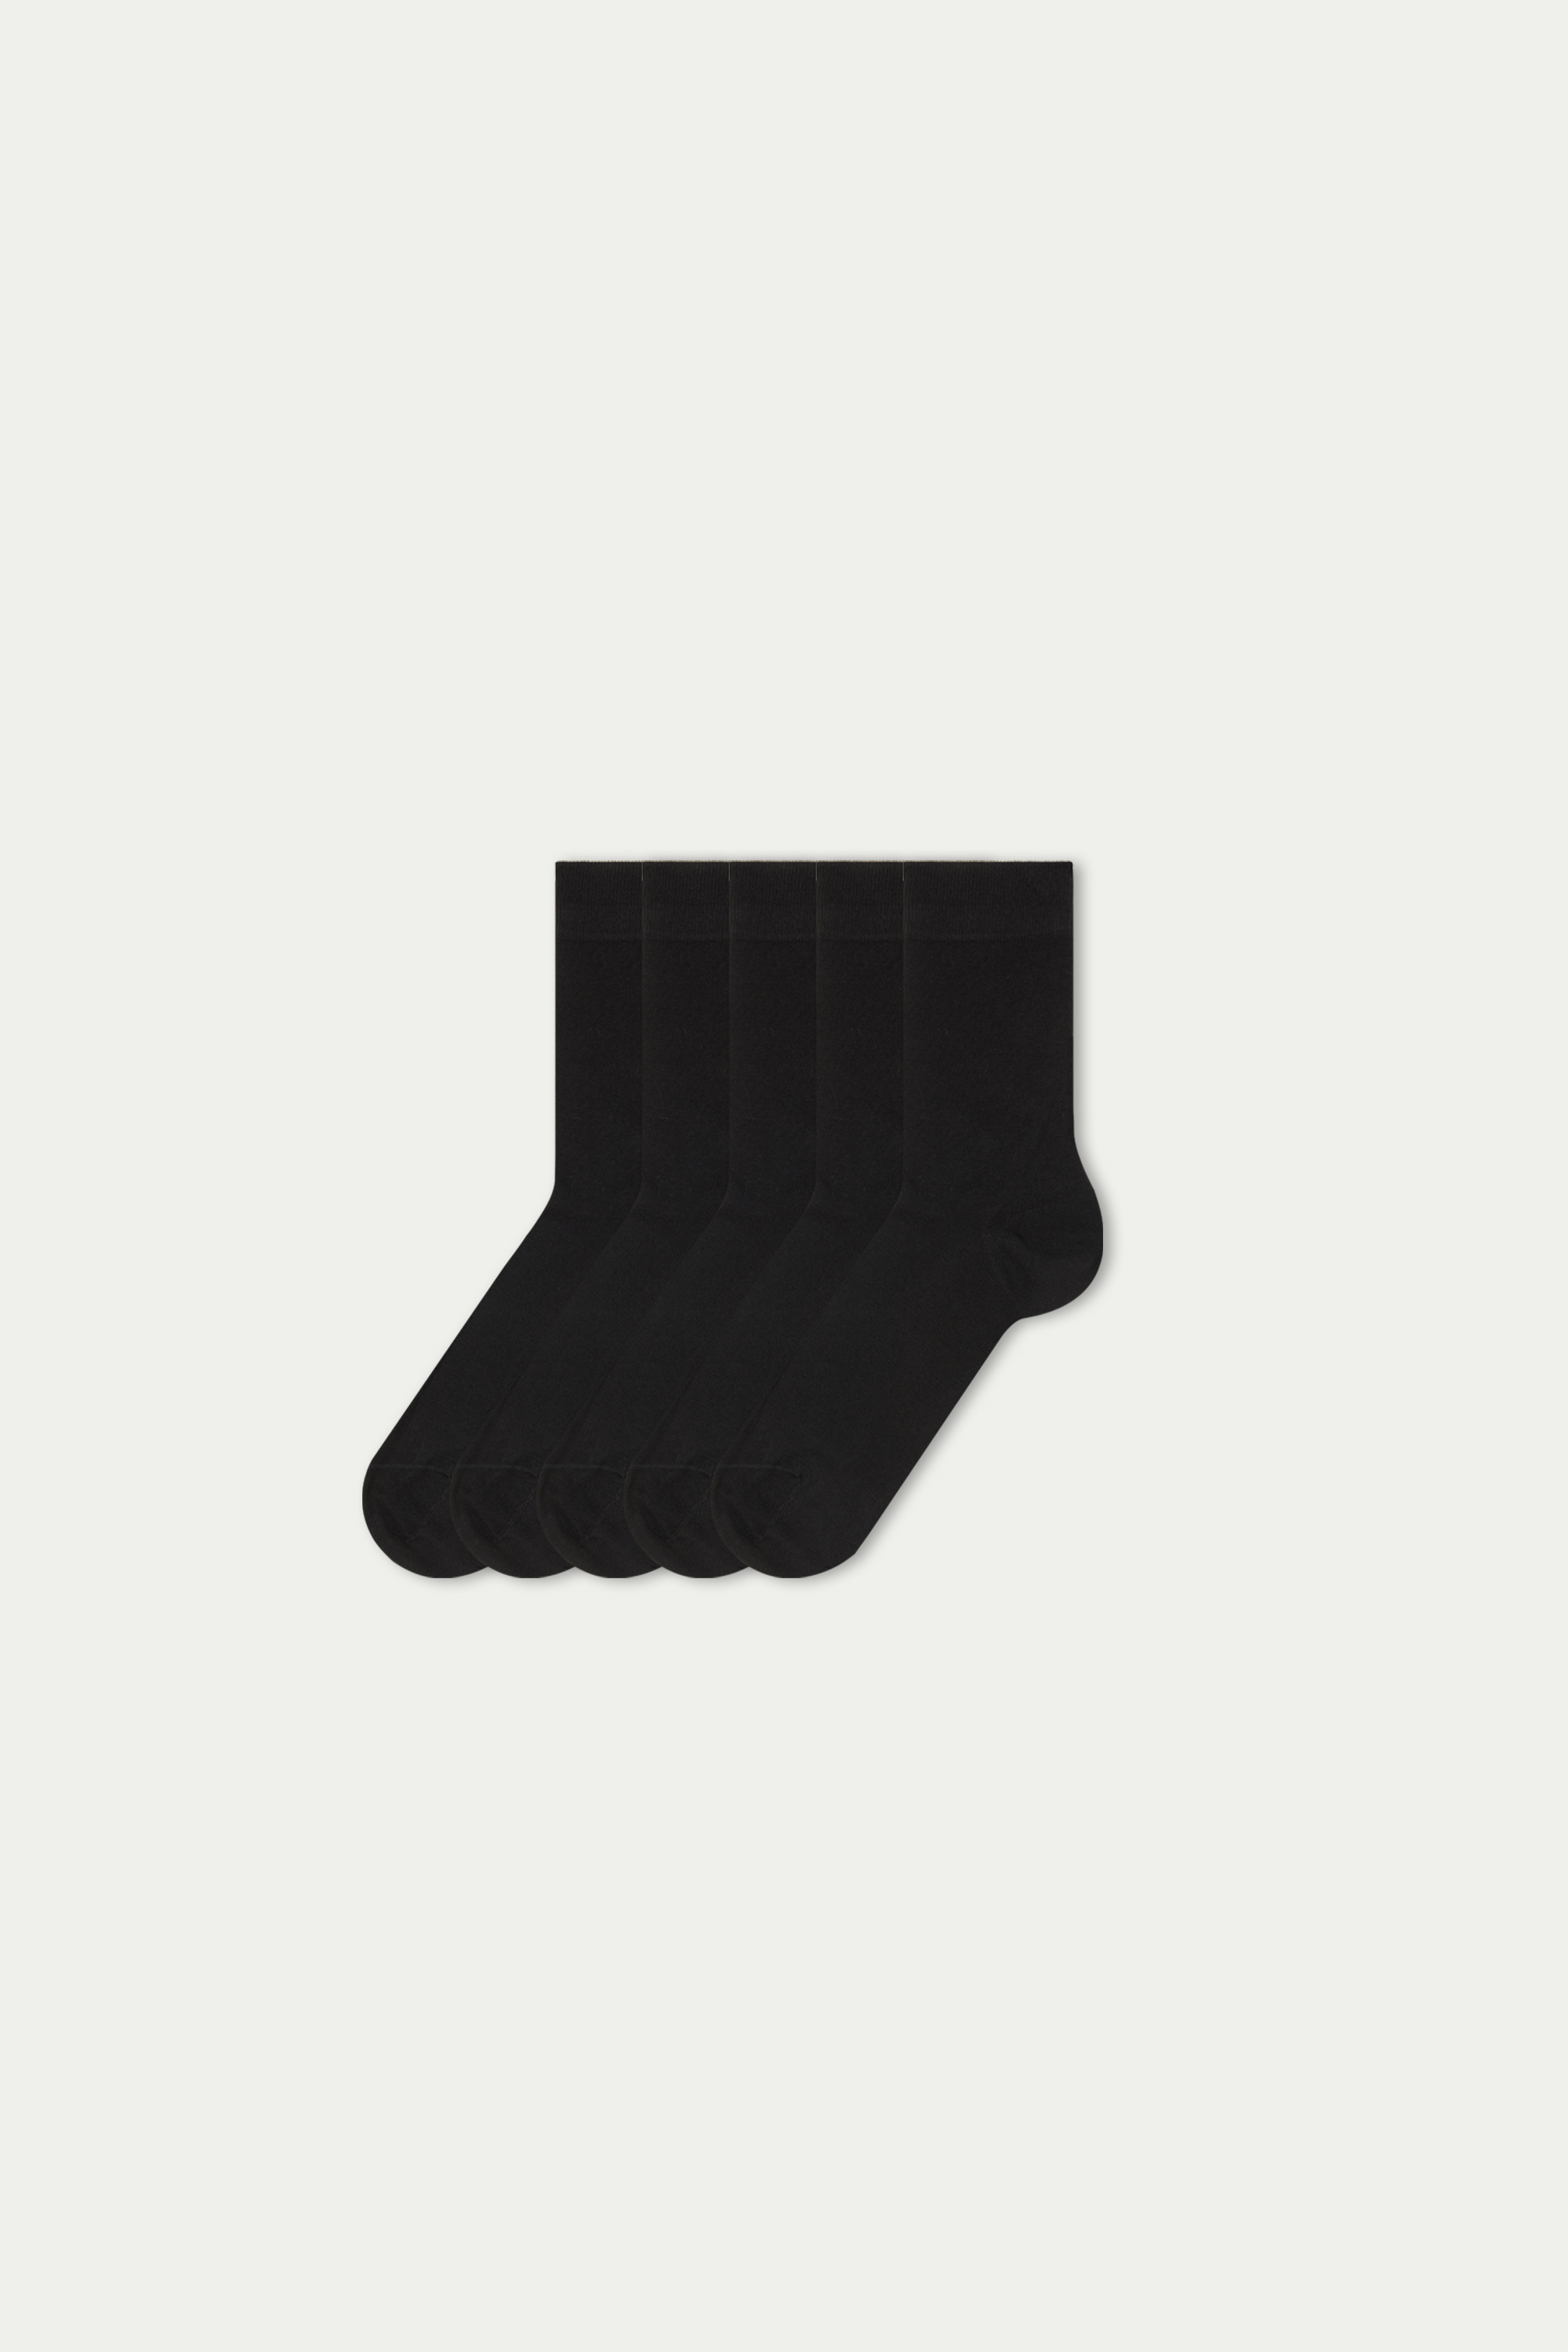 5 Ζευγάρια Σετ Κοντές Κάλτσες από Ελαφρύ Βαμβακερό Ύφασμα